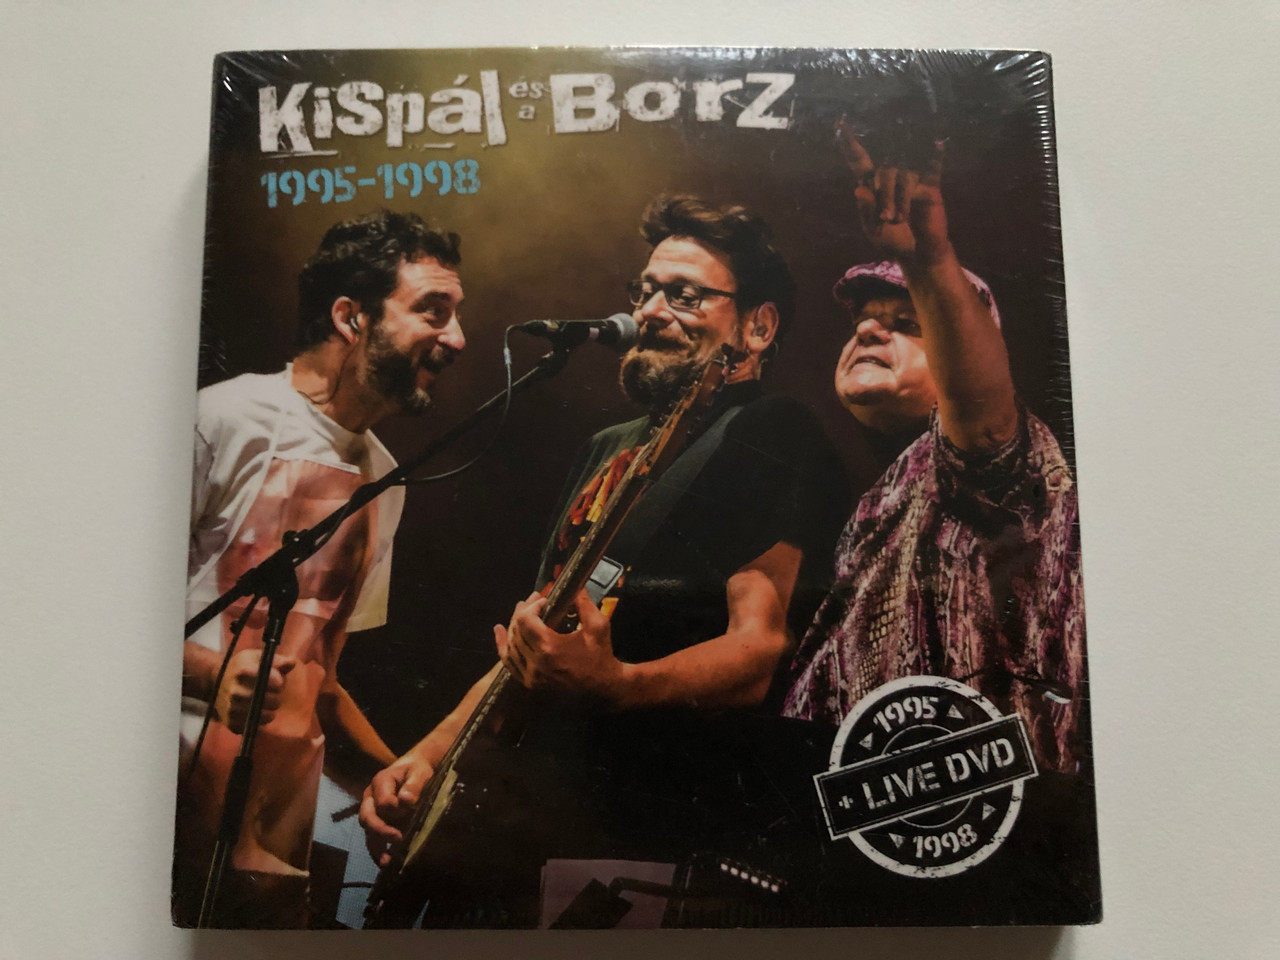 Kispál és a Borz 1995-1998 + Live DVD / Megacio Kiakto Audio CD 1995-1998 -  bibleinmylanguage